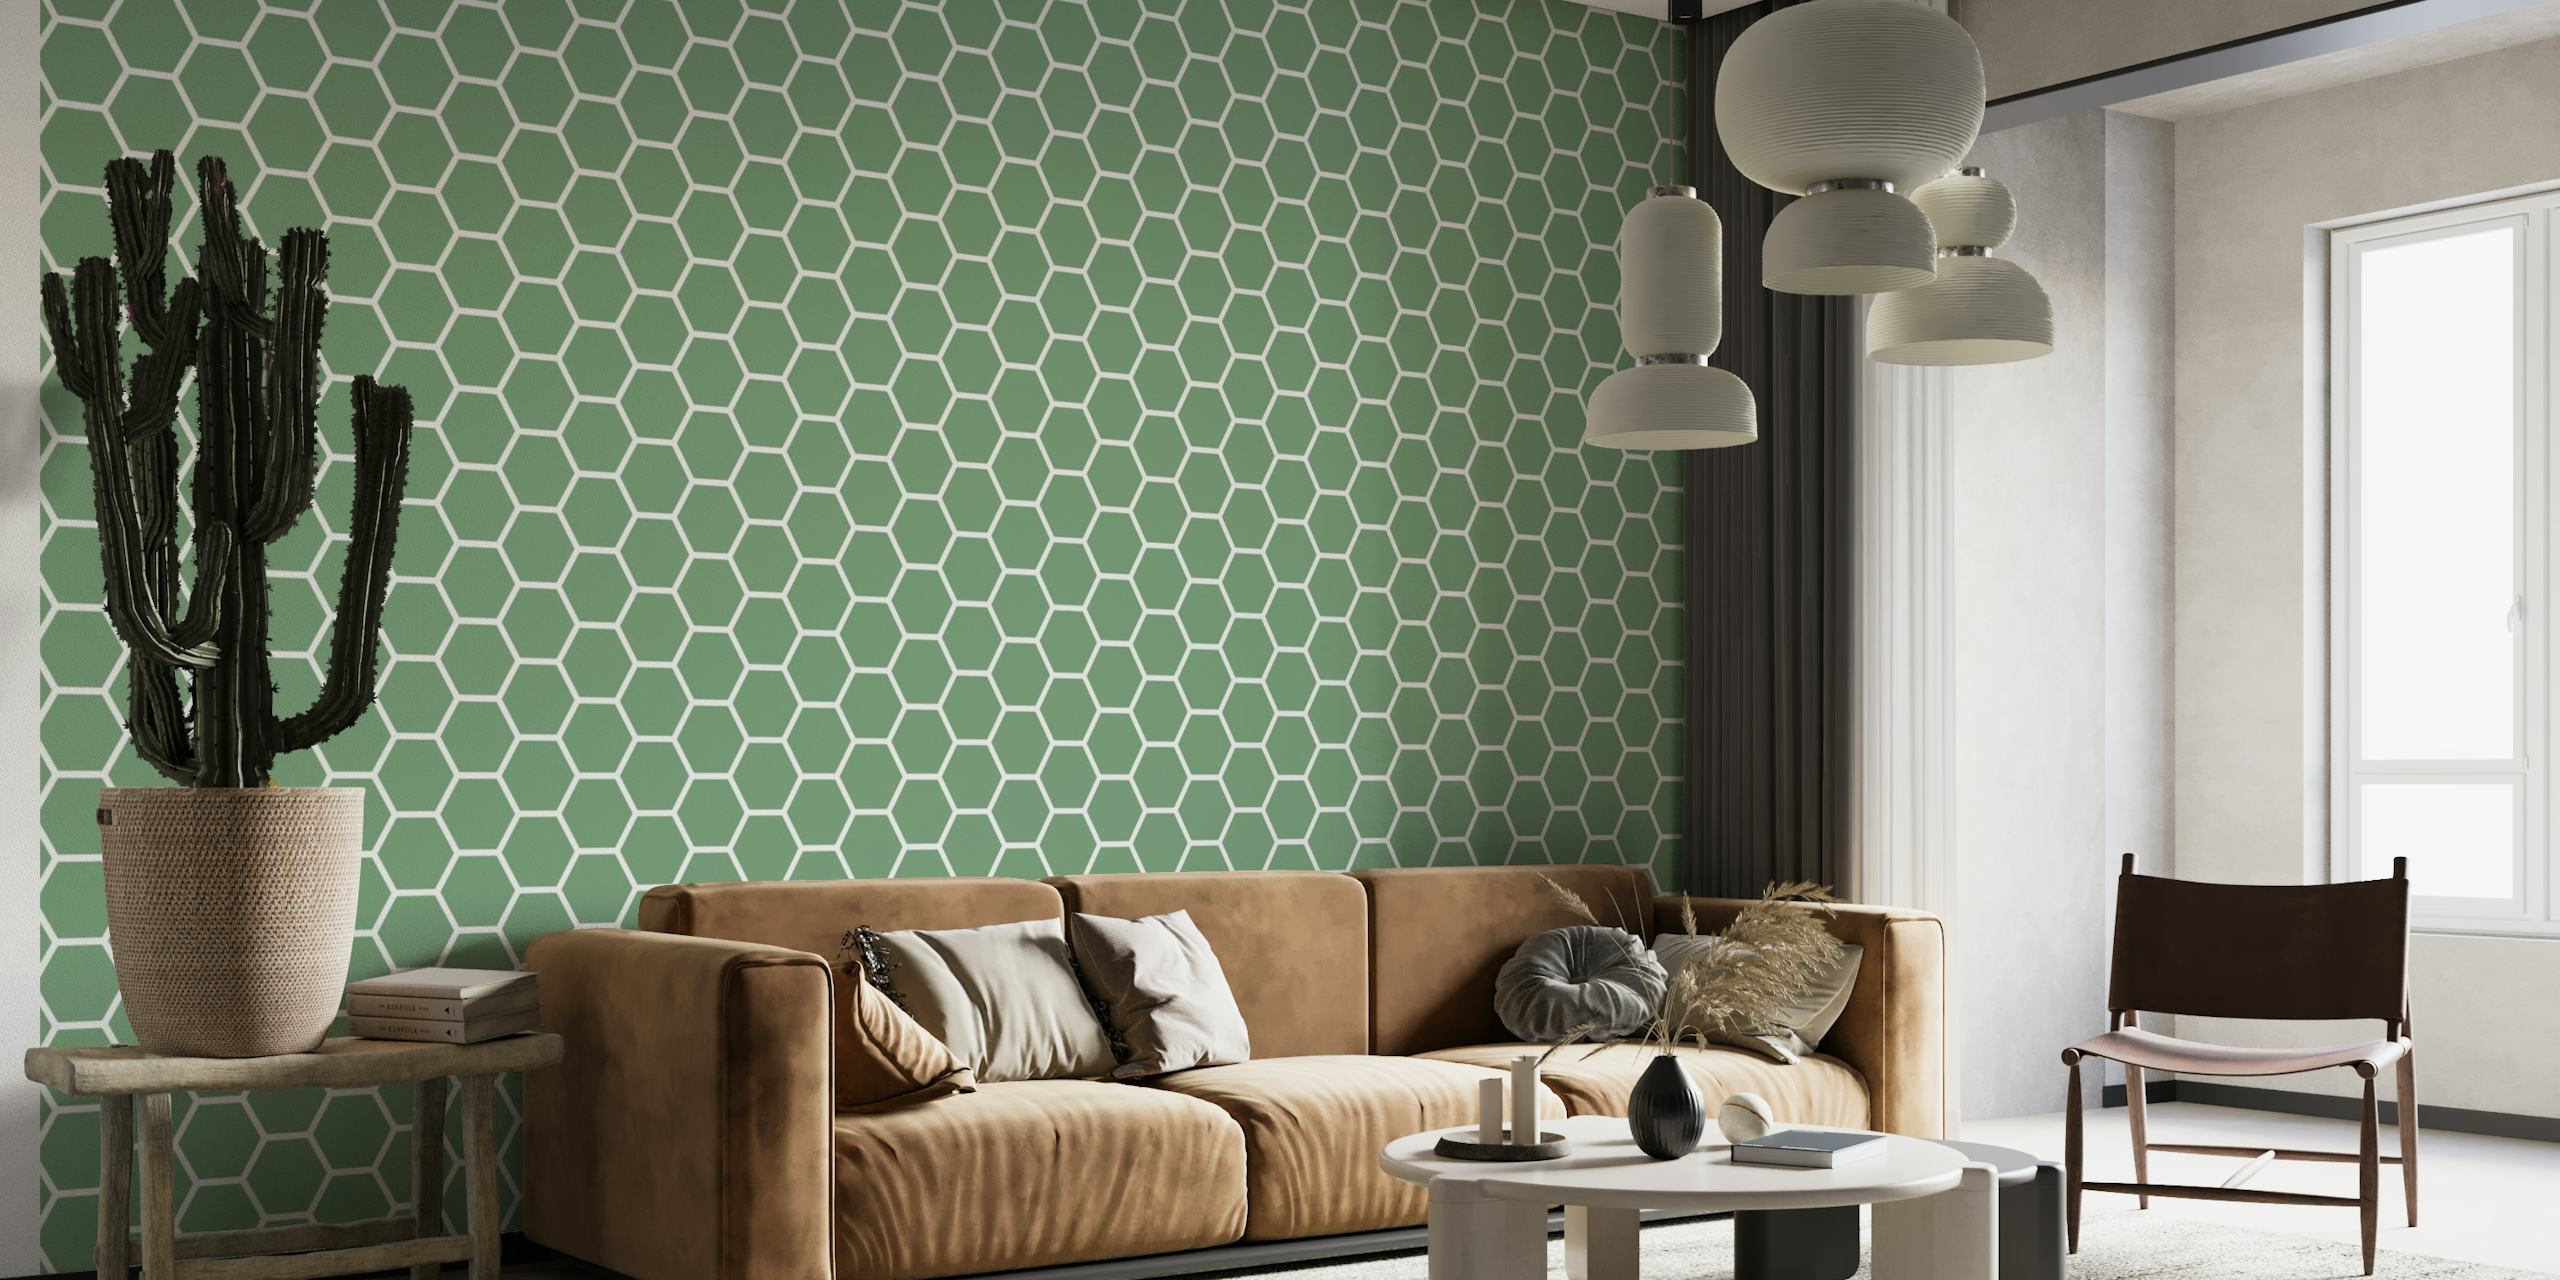 Green Hexagon Pattern papel pintado